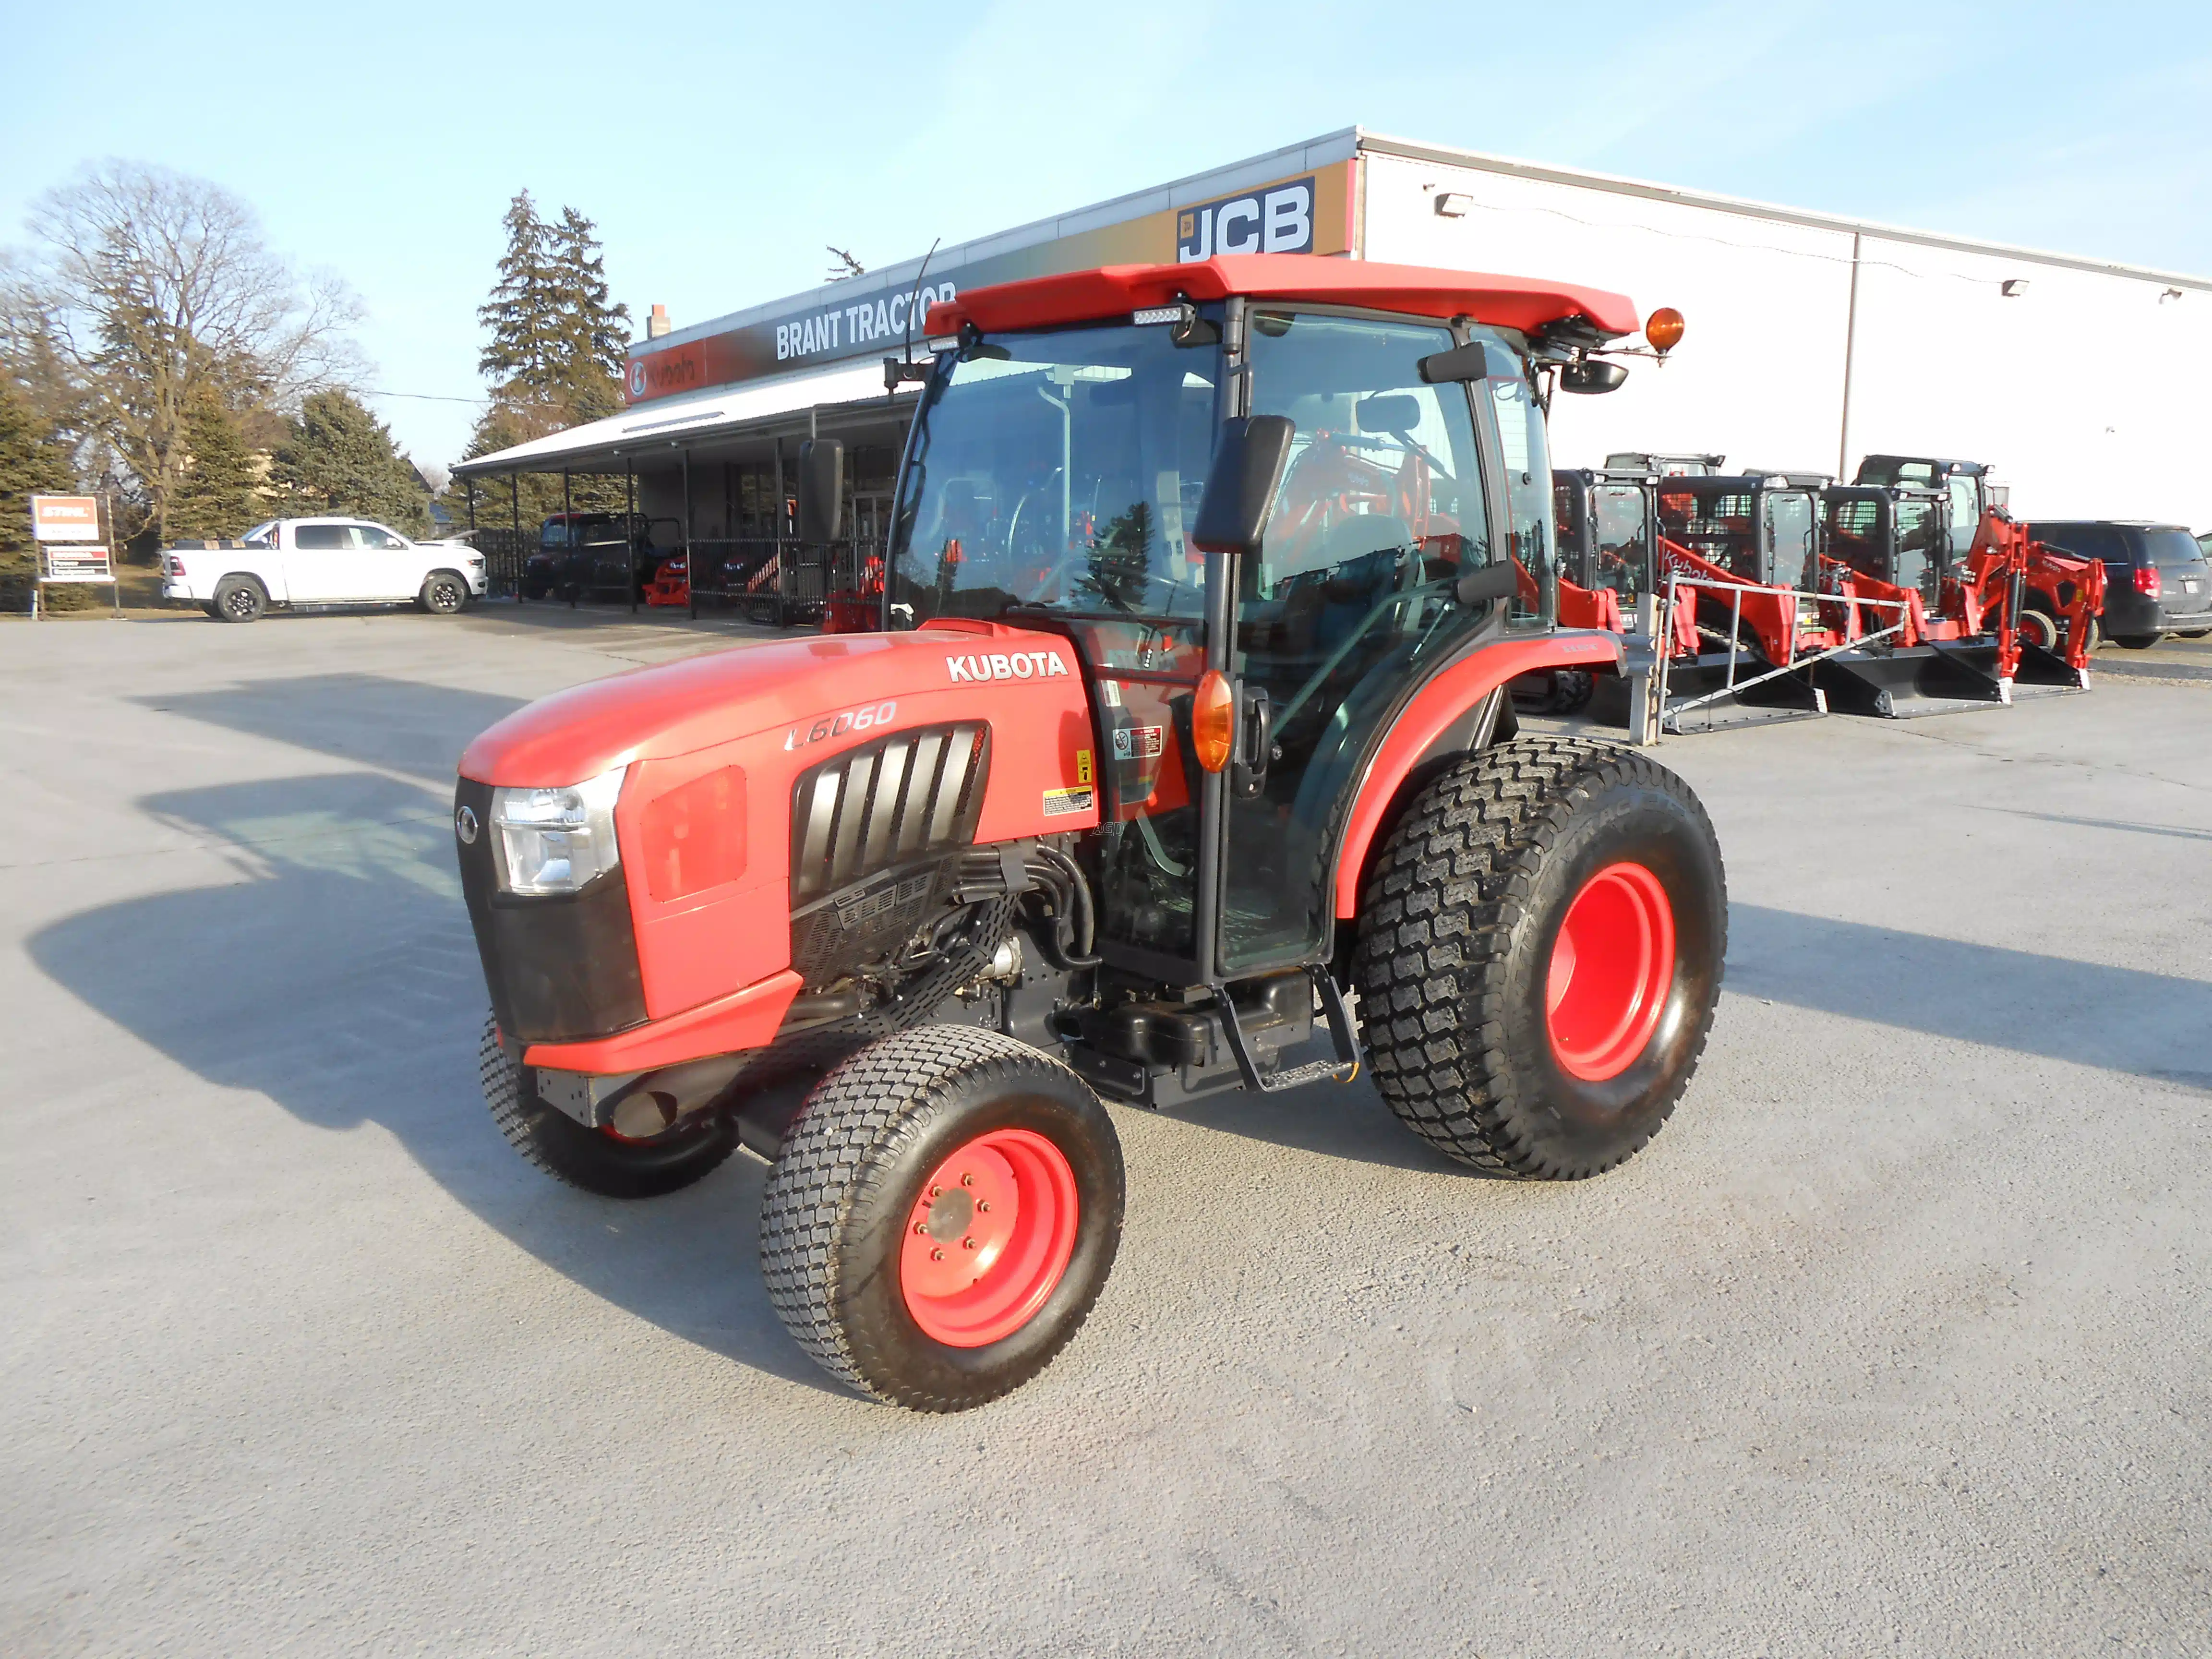 Tractors & Farm Equipment à vendre près de St. Catharines, ON